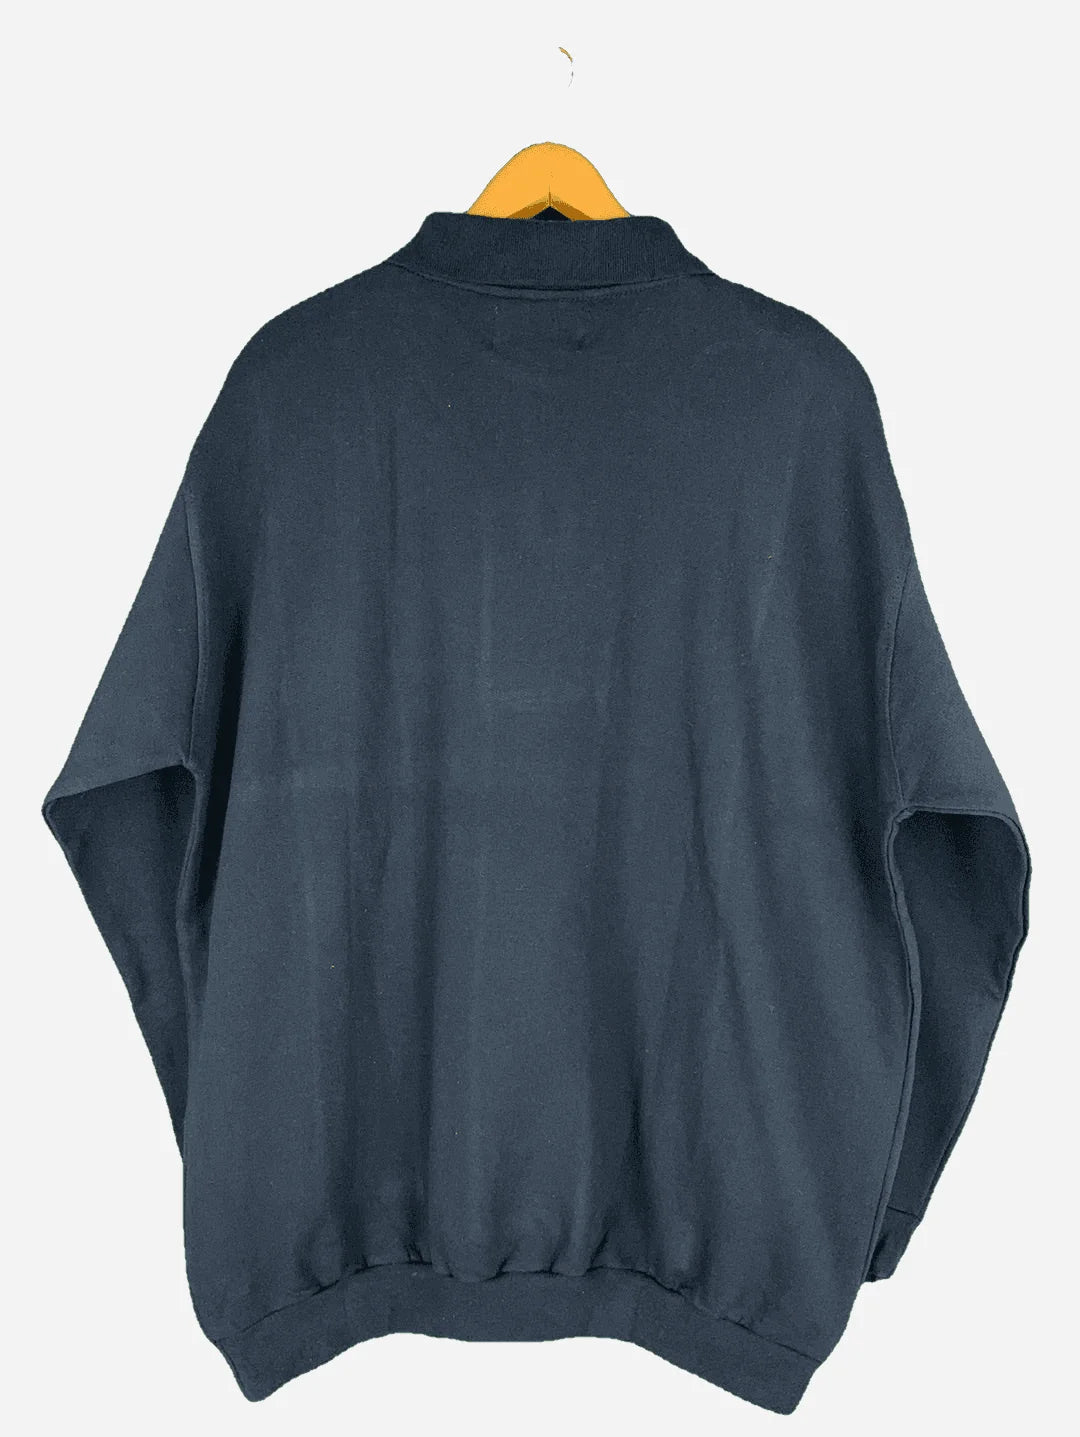 Enrico Leoni Halfzip Sweater (L)